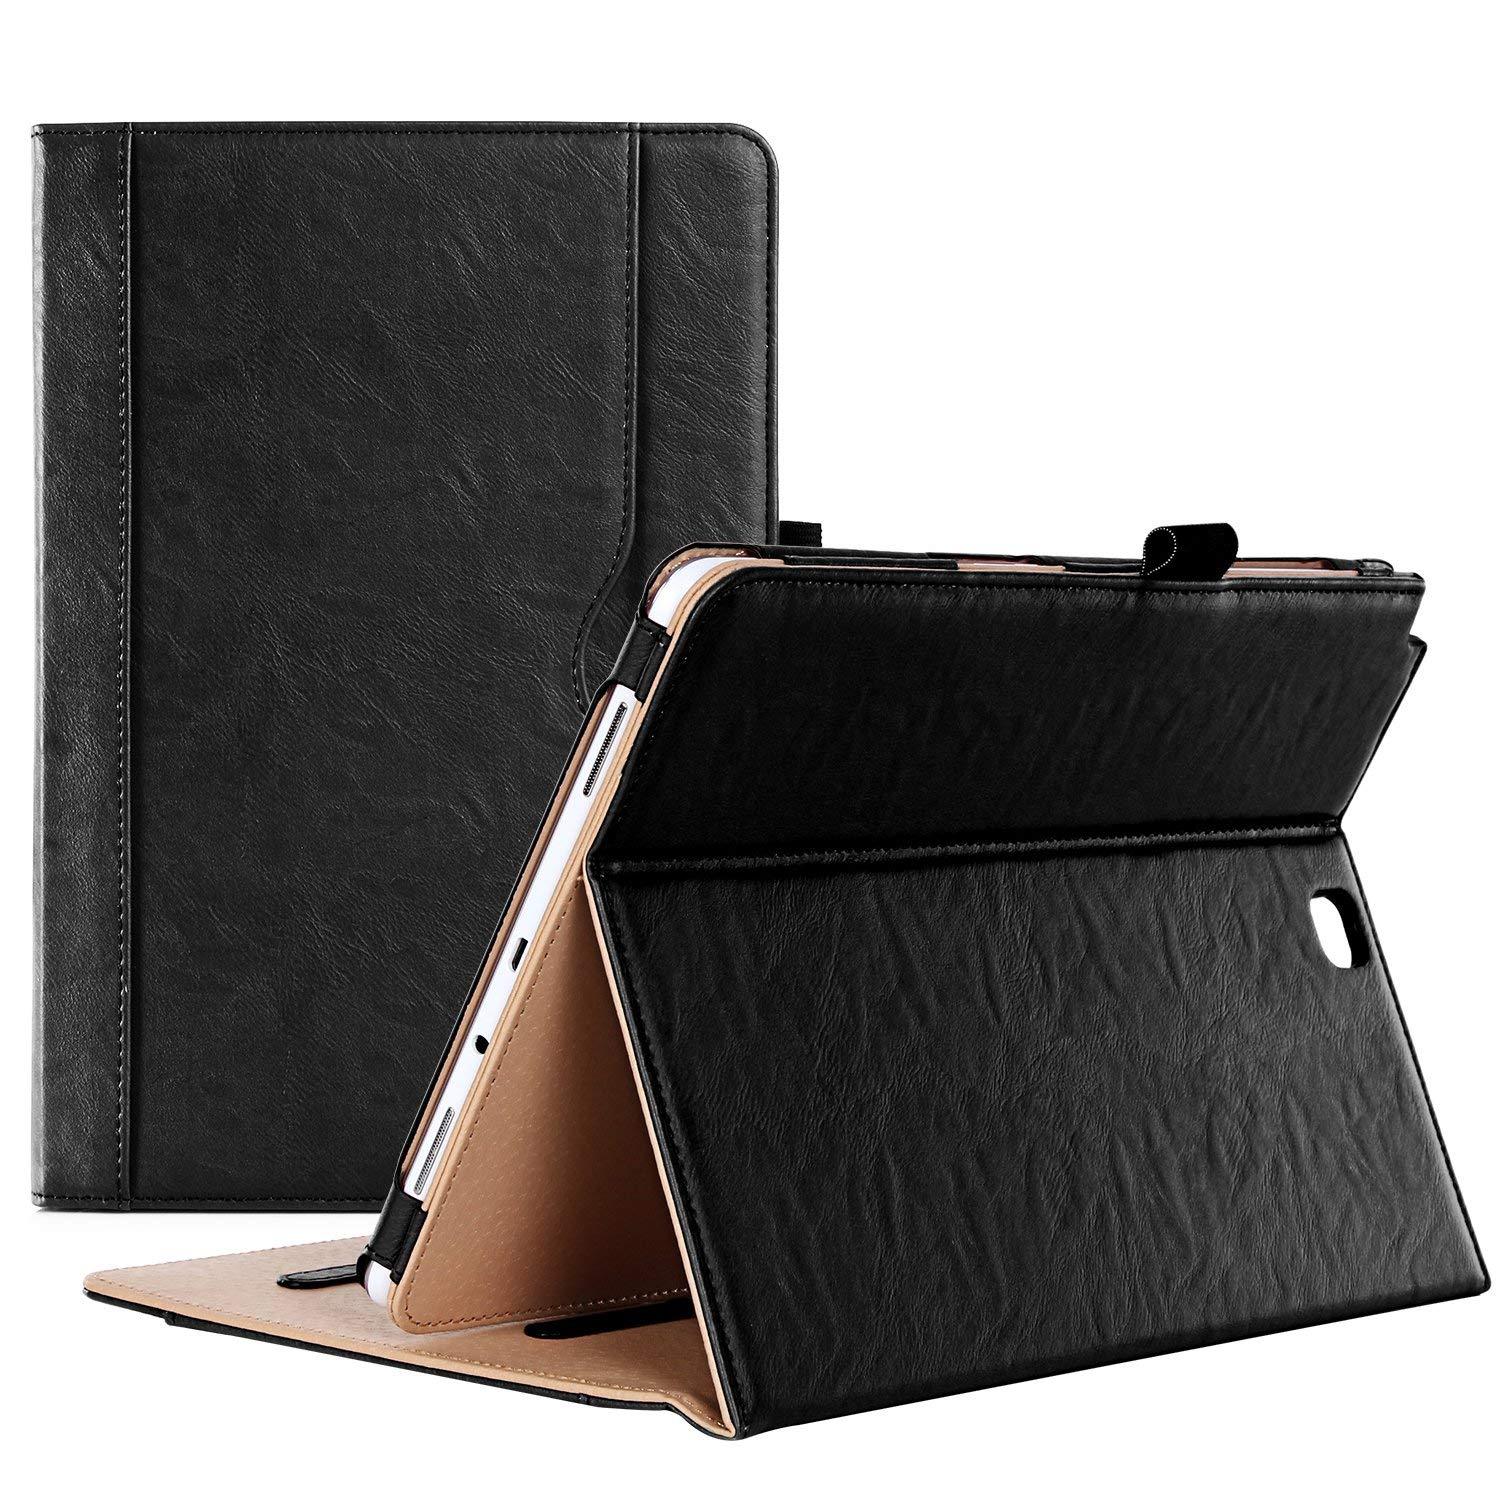 Galaxy Tab A 9.7 2015 T550 Leather Folio Case